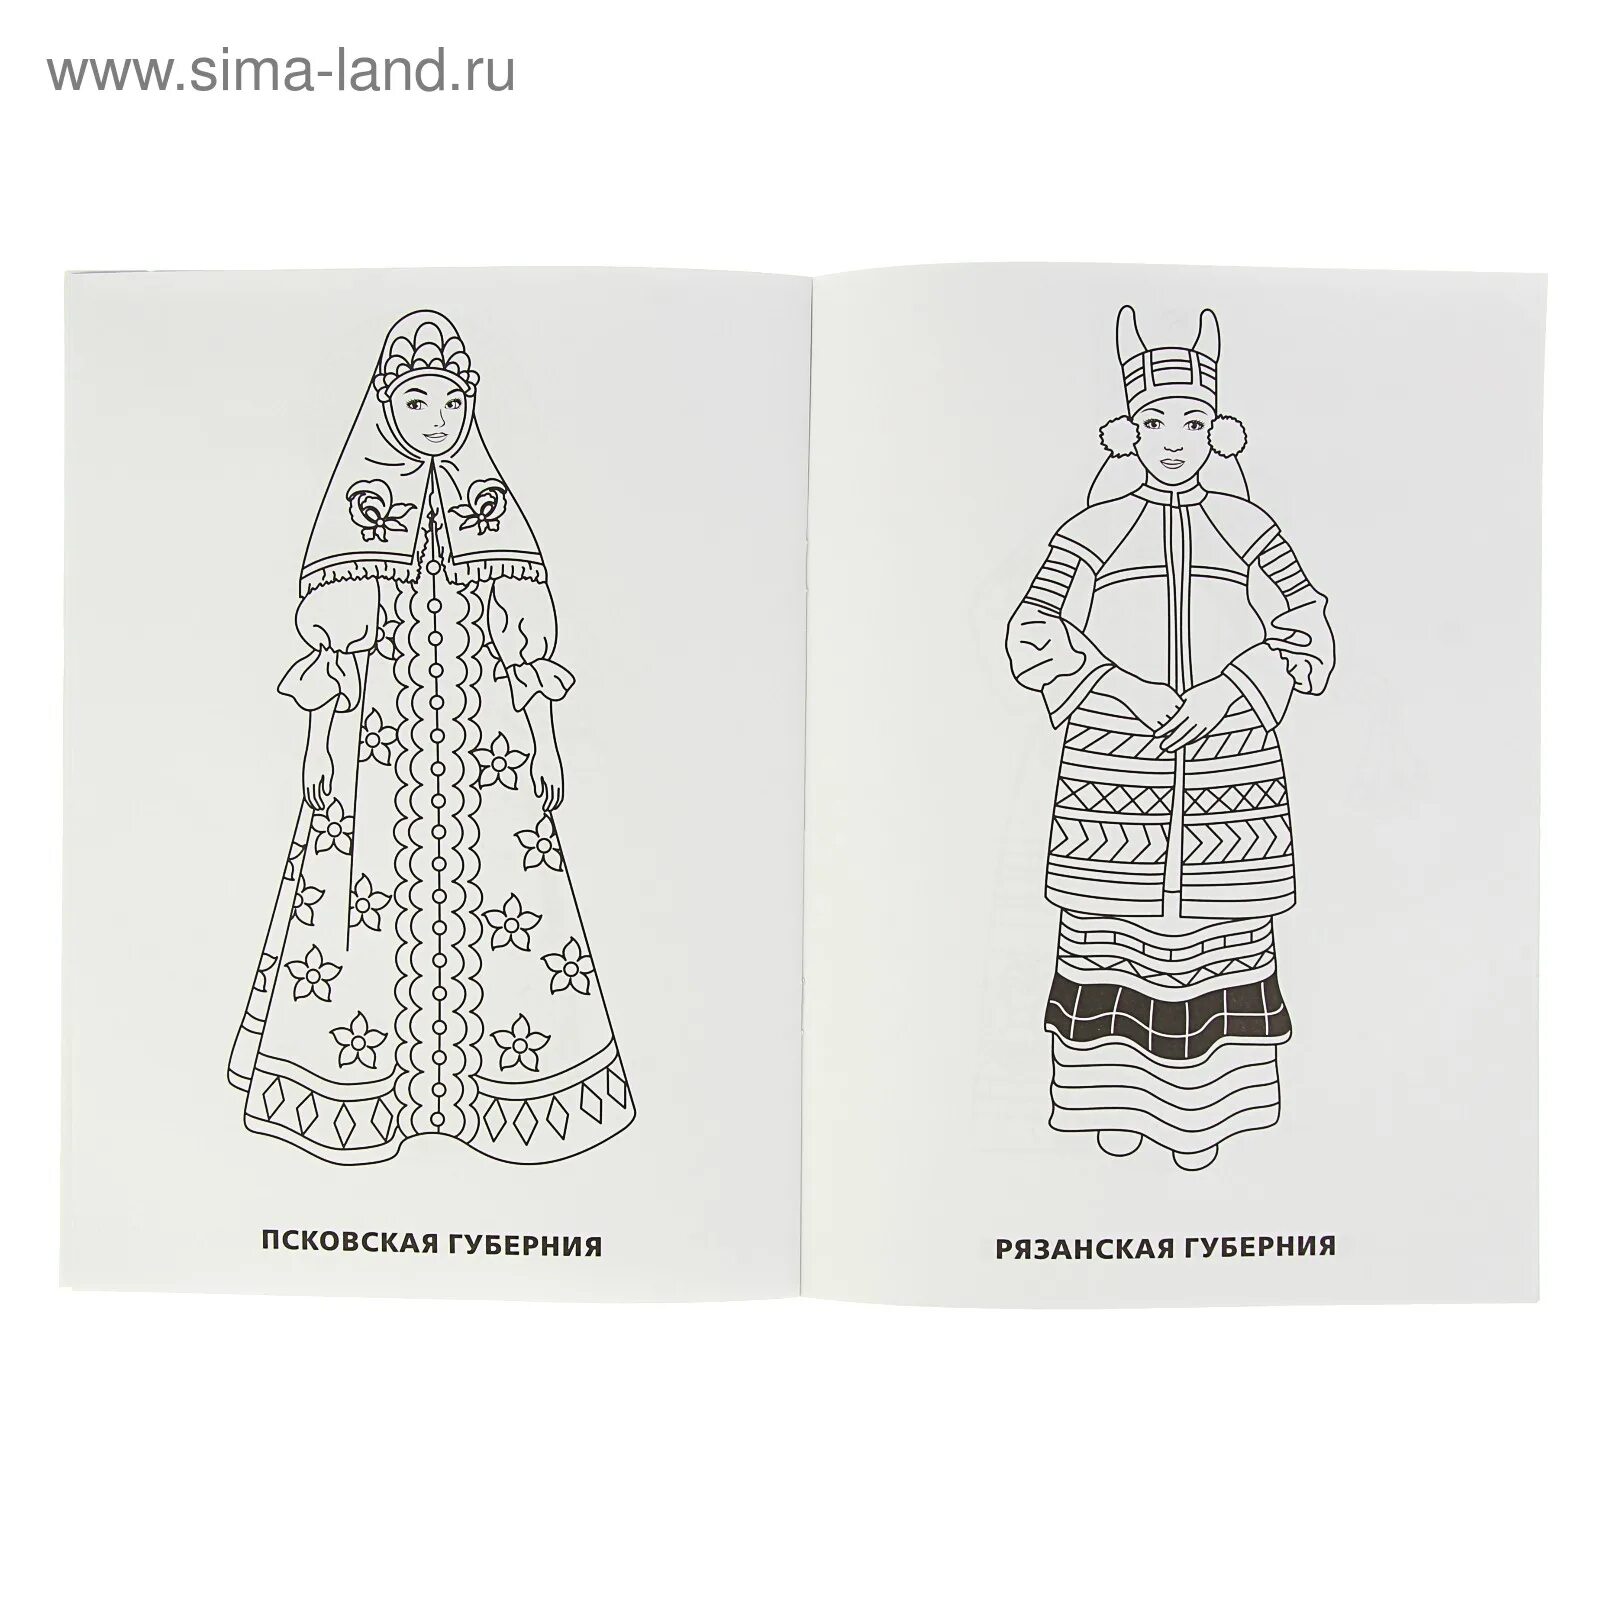 Традиционный русский костюм #1